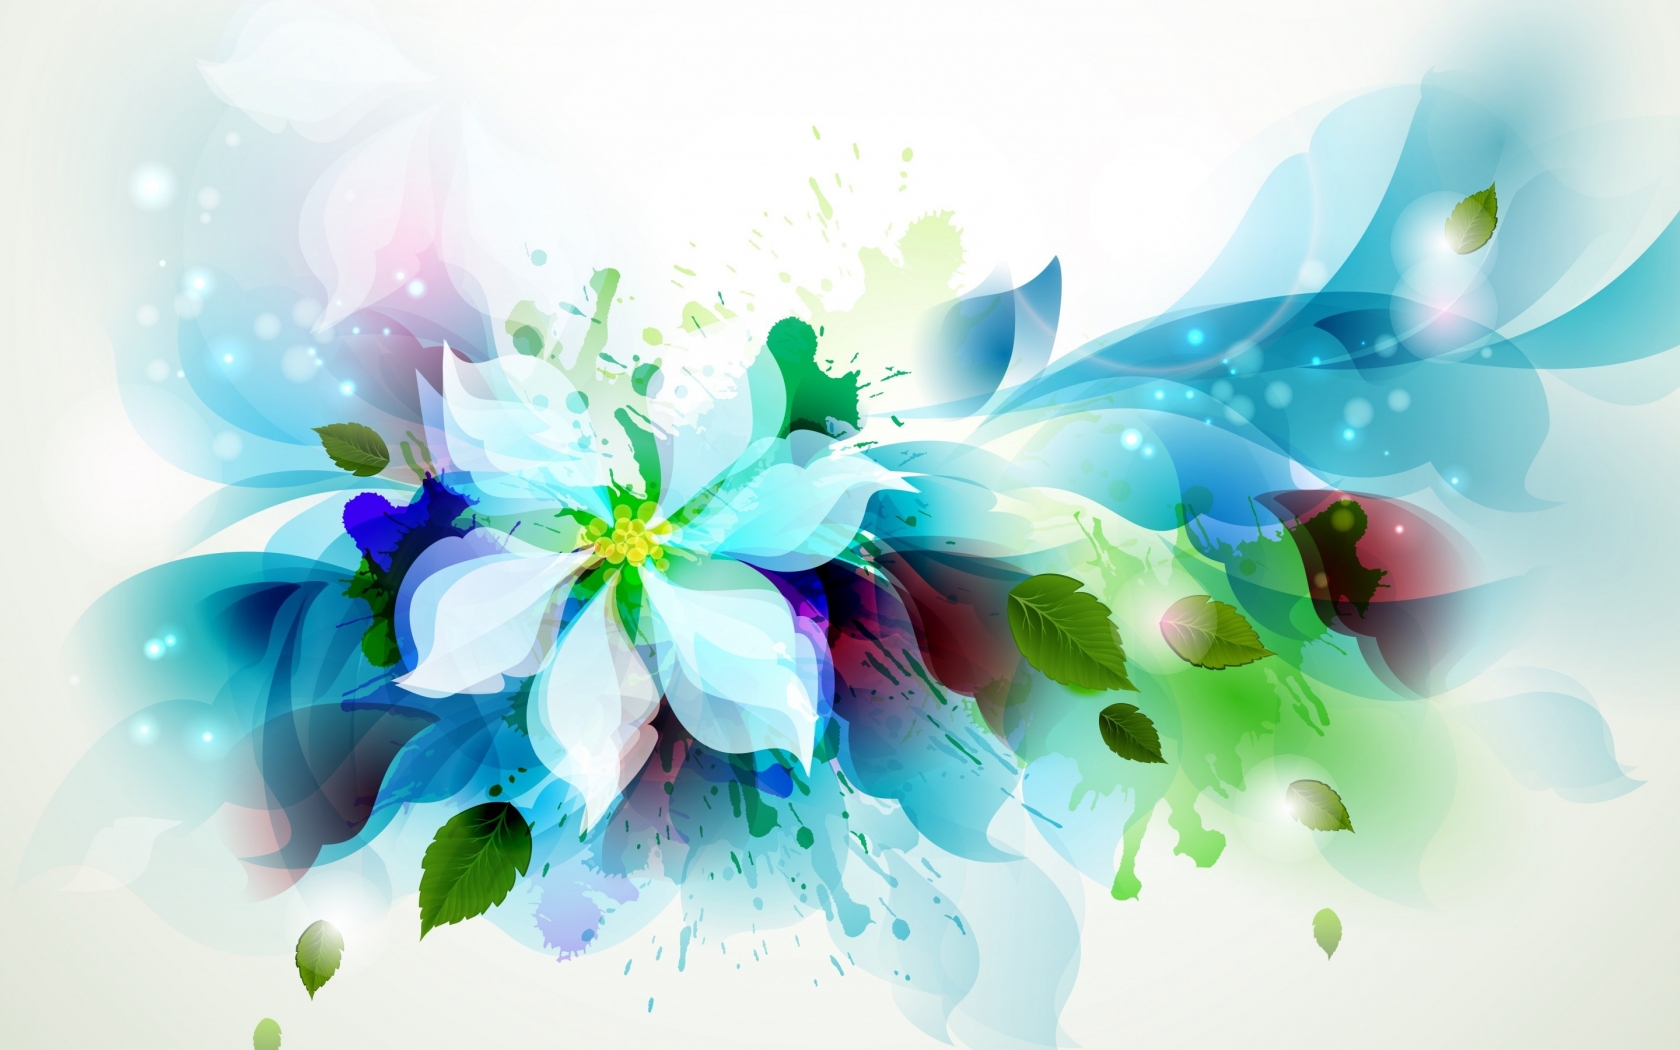 Beautiful Flower Art for 1680 x 1050 widescreen resolution